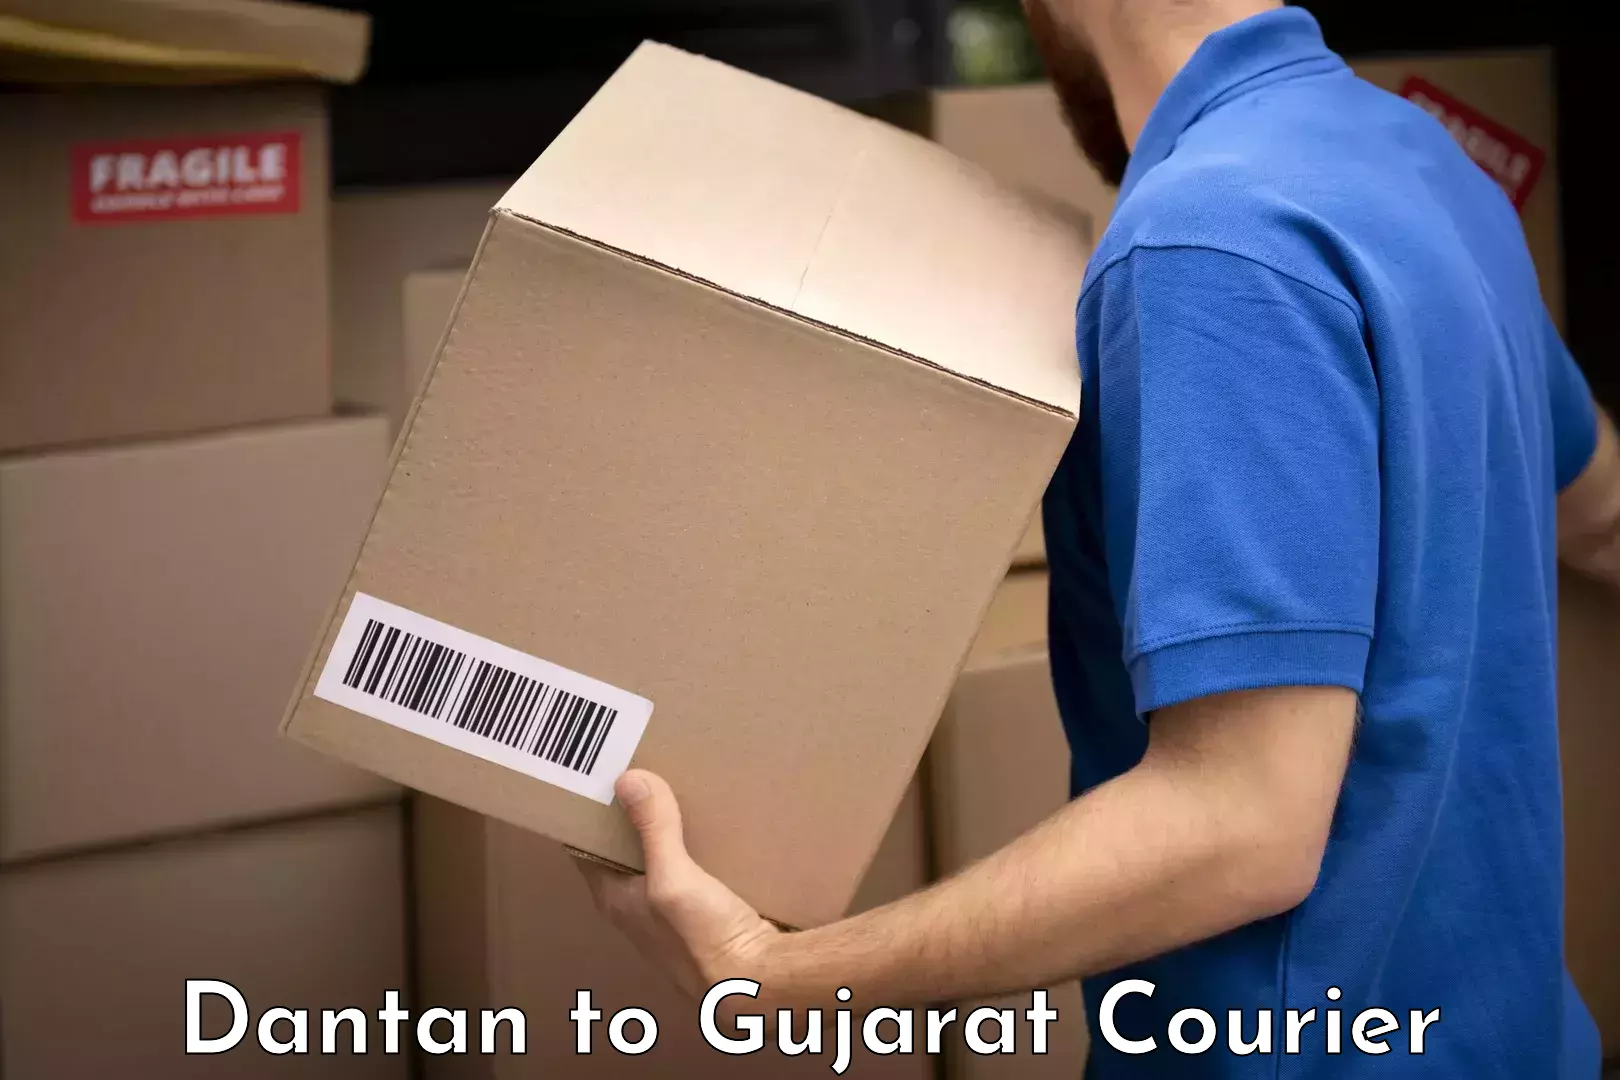 Baggage relocation service Dantan to Gujarat